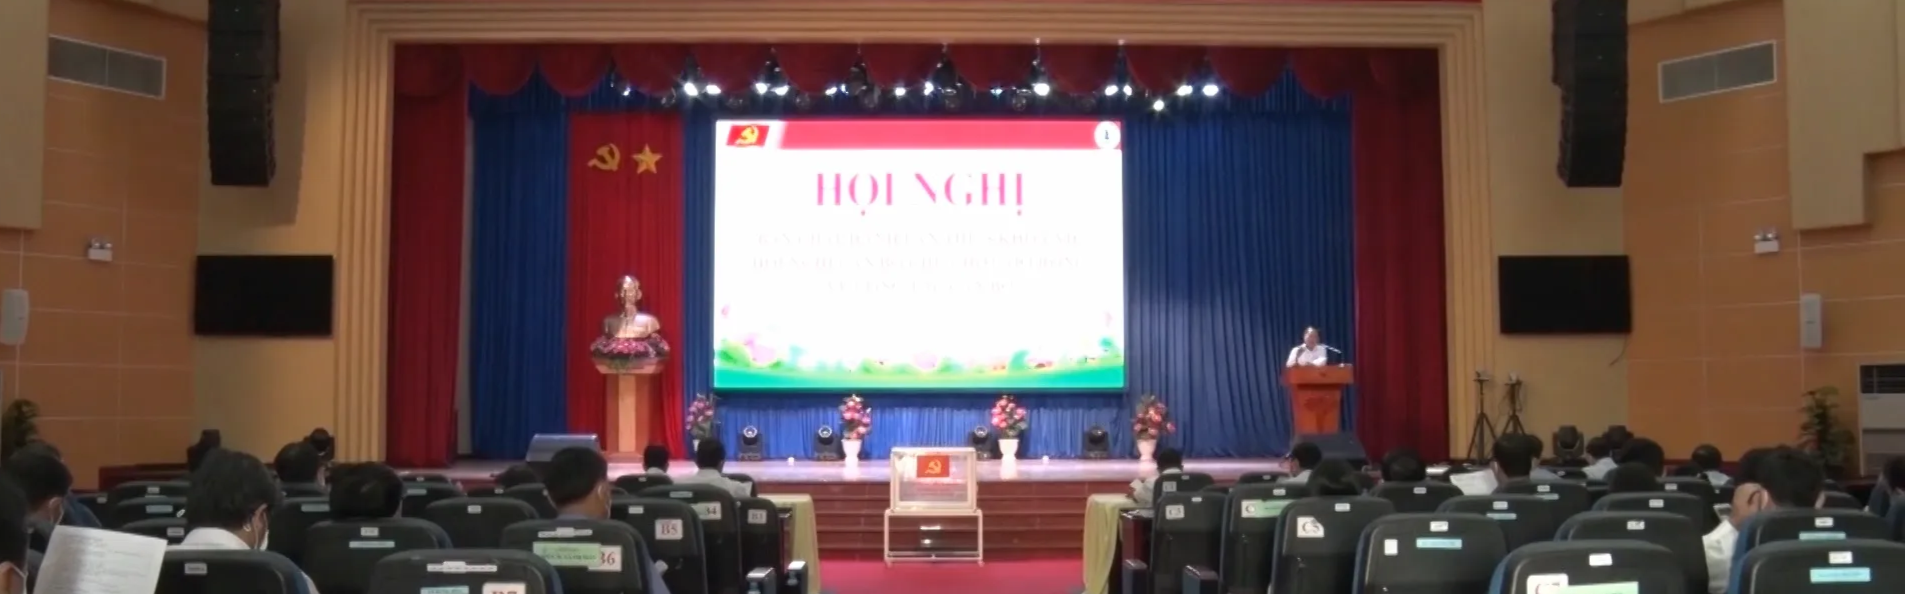 Huyện ủy Bàu Bàng tổ chức Hội nghị Ban Chấp hành lần thứ 8 và Hội nghị cán bộ chủ chốt về công tác cán bộ